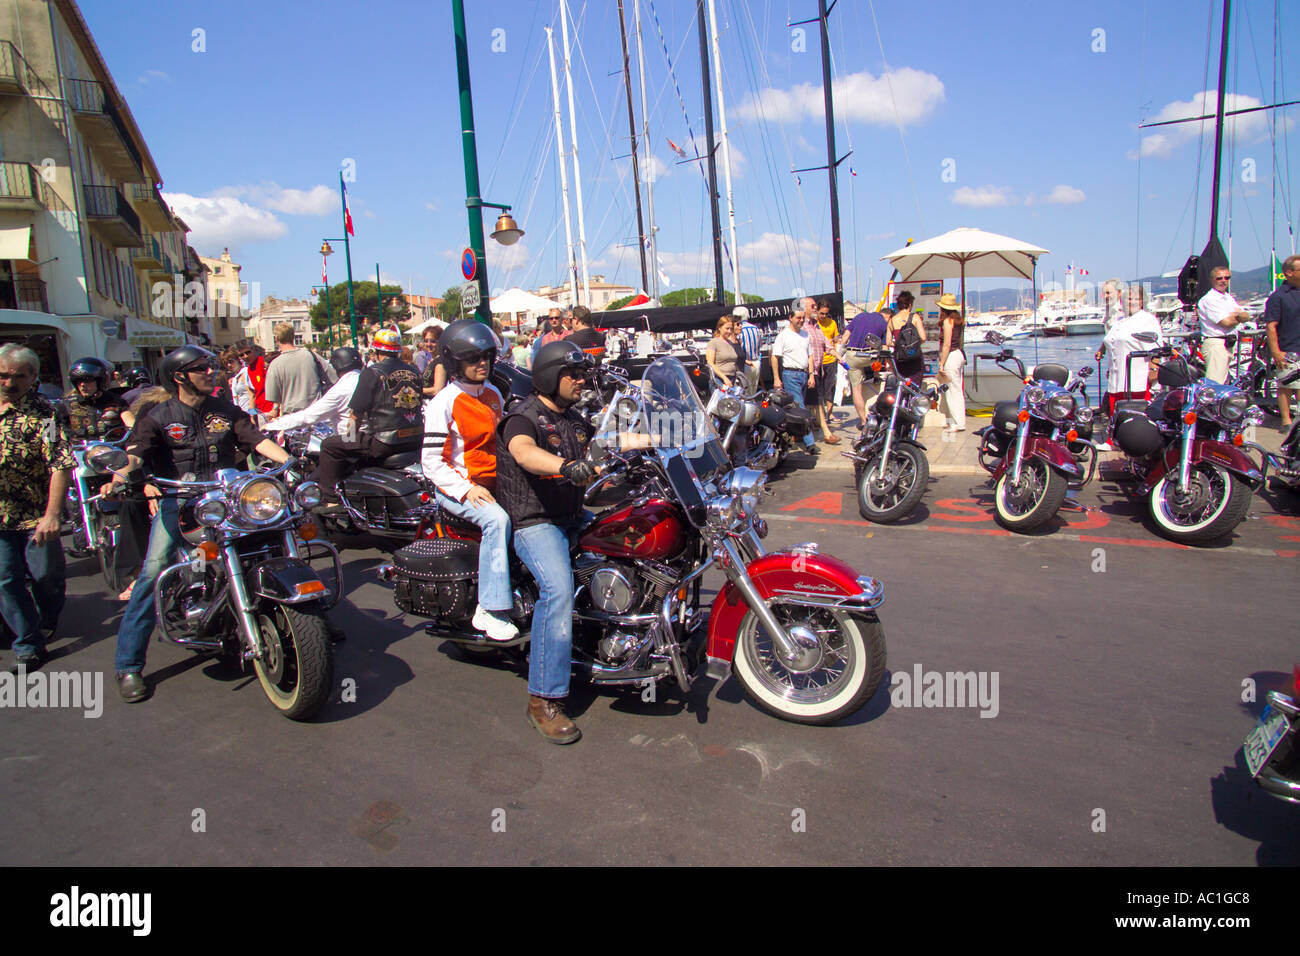 Rassemblement Harley Davidson st tropez france yachts de luxe et  motocyclettes Harley Davidson mix sur le quai du port Photo Stock - Alamy